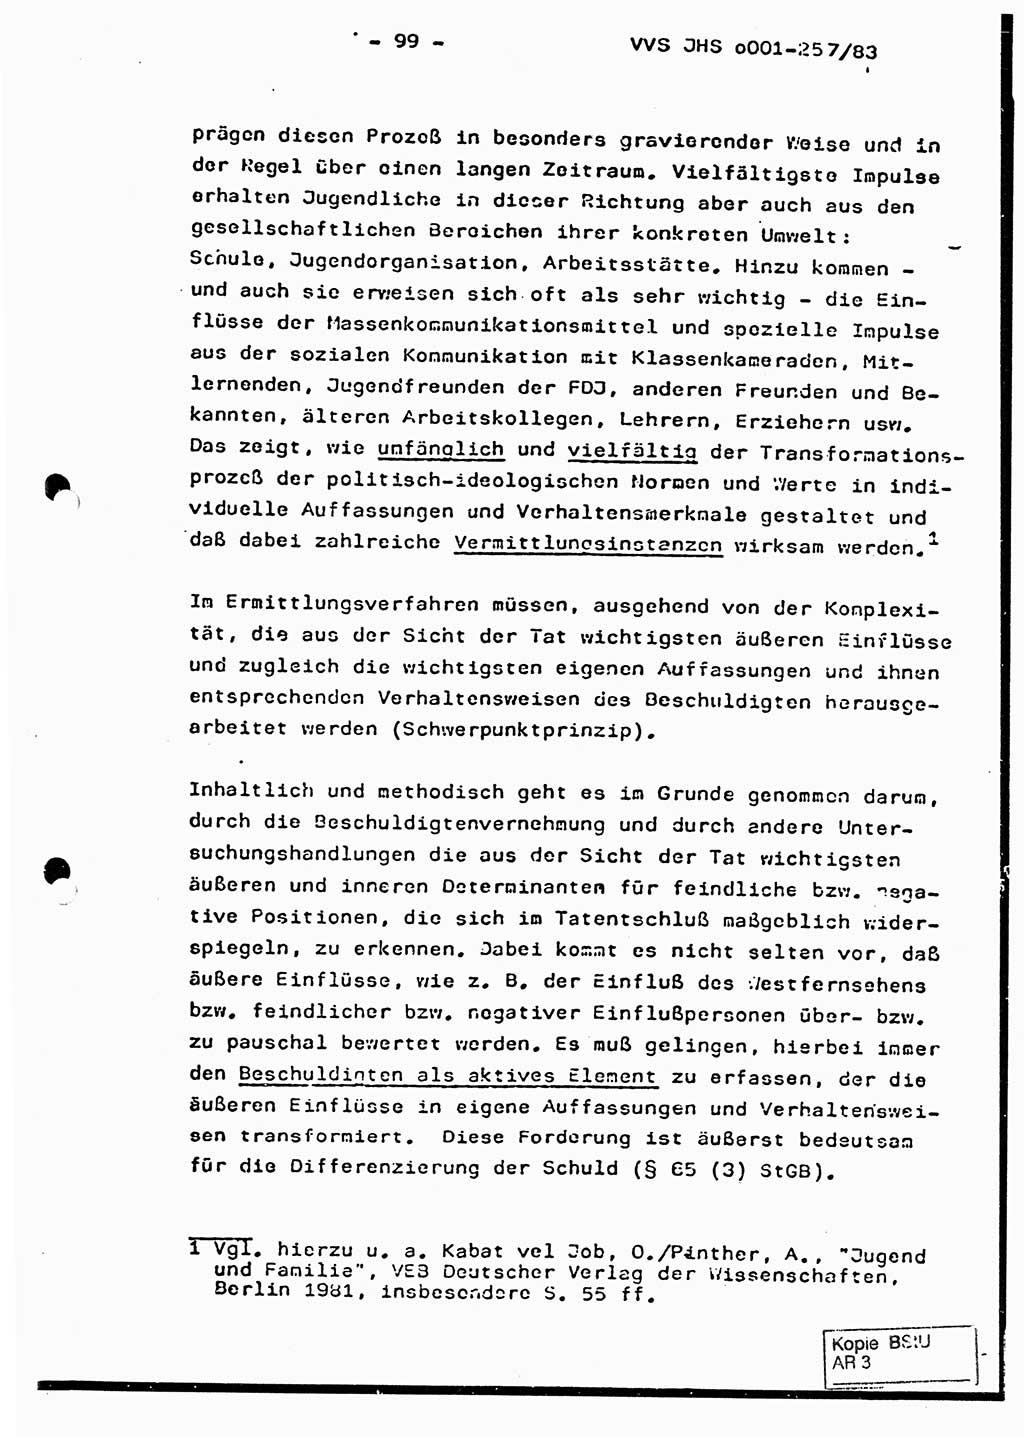 Dissertation, Oberst Helmut Lubas (BV Mdg.), Oberstleutnant Manfred Eschberger (HA IX), Oberleutnant Hans-Jürgen Ludwig (JHS), Ministerium für Staatssicherheit (MfS) [Deutsche Demokratische Republik (DDR)], Juristische Hochschule (JHS), Vertrauliche Verschlußsache (VVS) o001-257/83, Potsdam 1983, Seite 99 (Diss. MfS DDR JHS VVS o001-257/83 1983, S. 99)